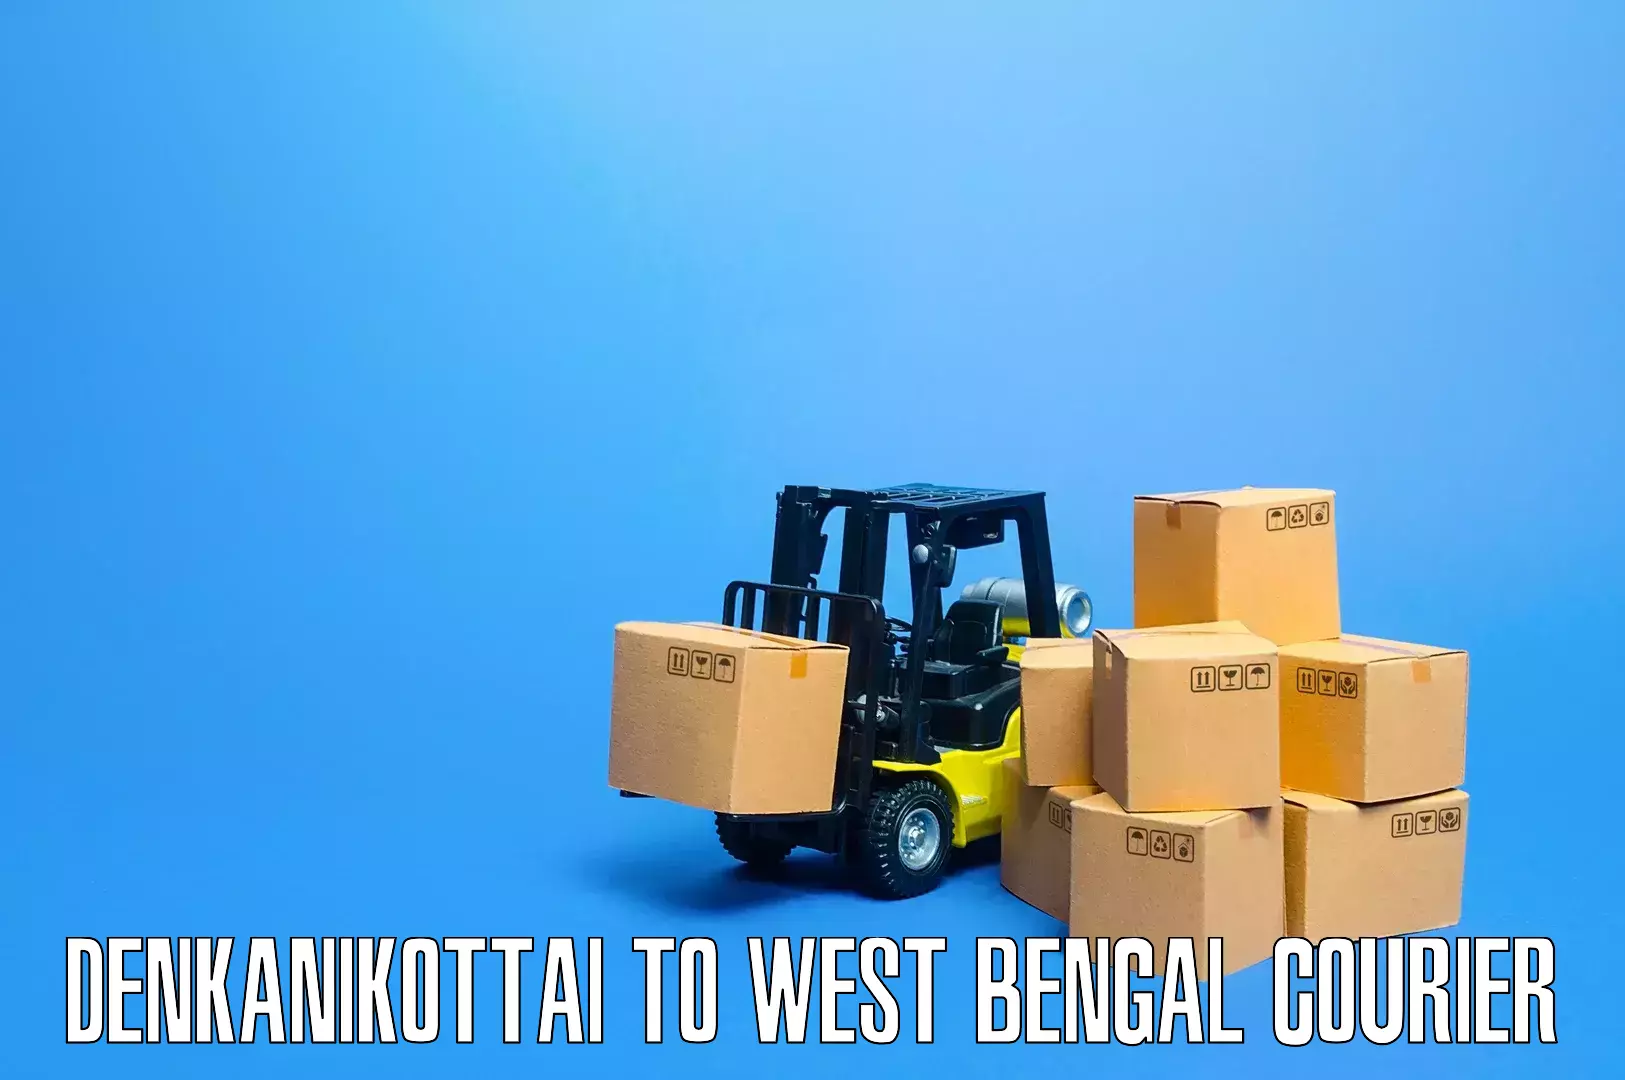 Furniture delivery service Denkanikottai to Kaliachak